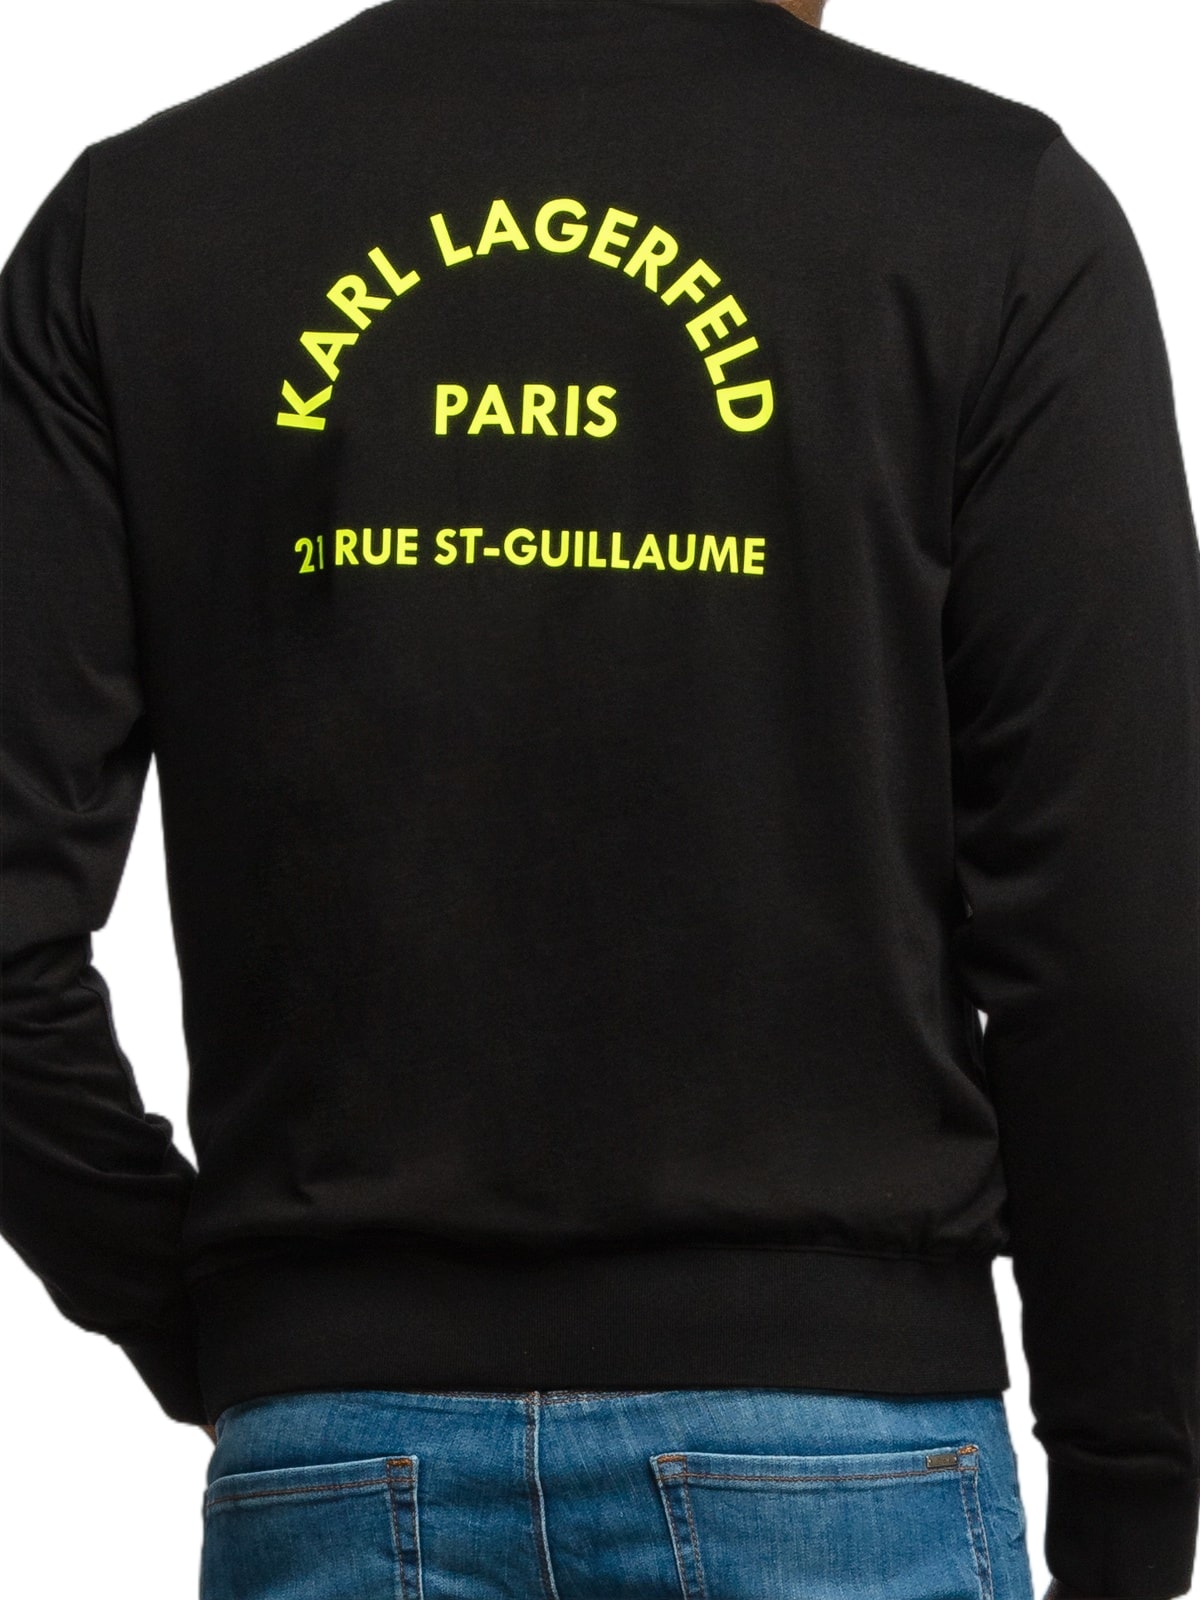 Karl Lagerfeld | Reversible 21 rue st-Guillaume jacket